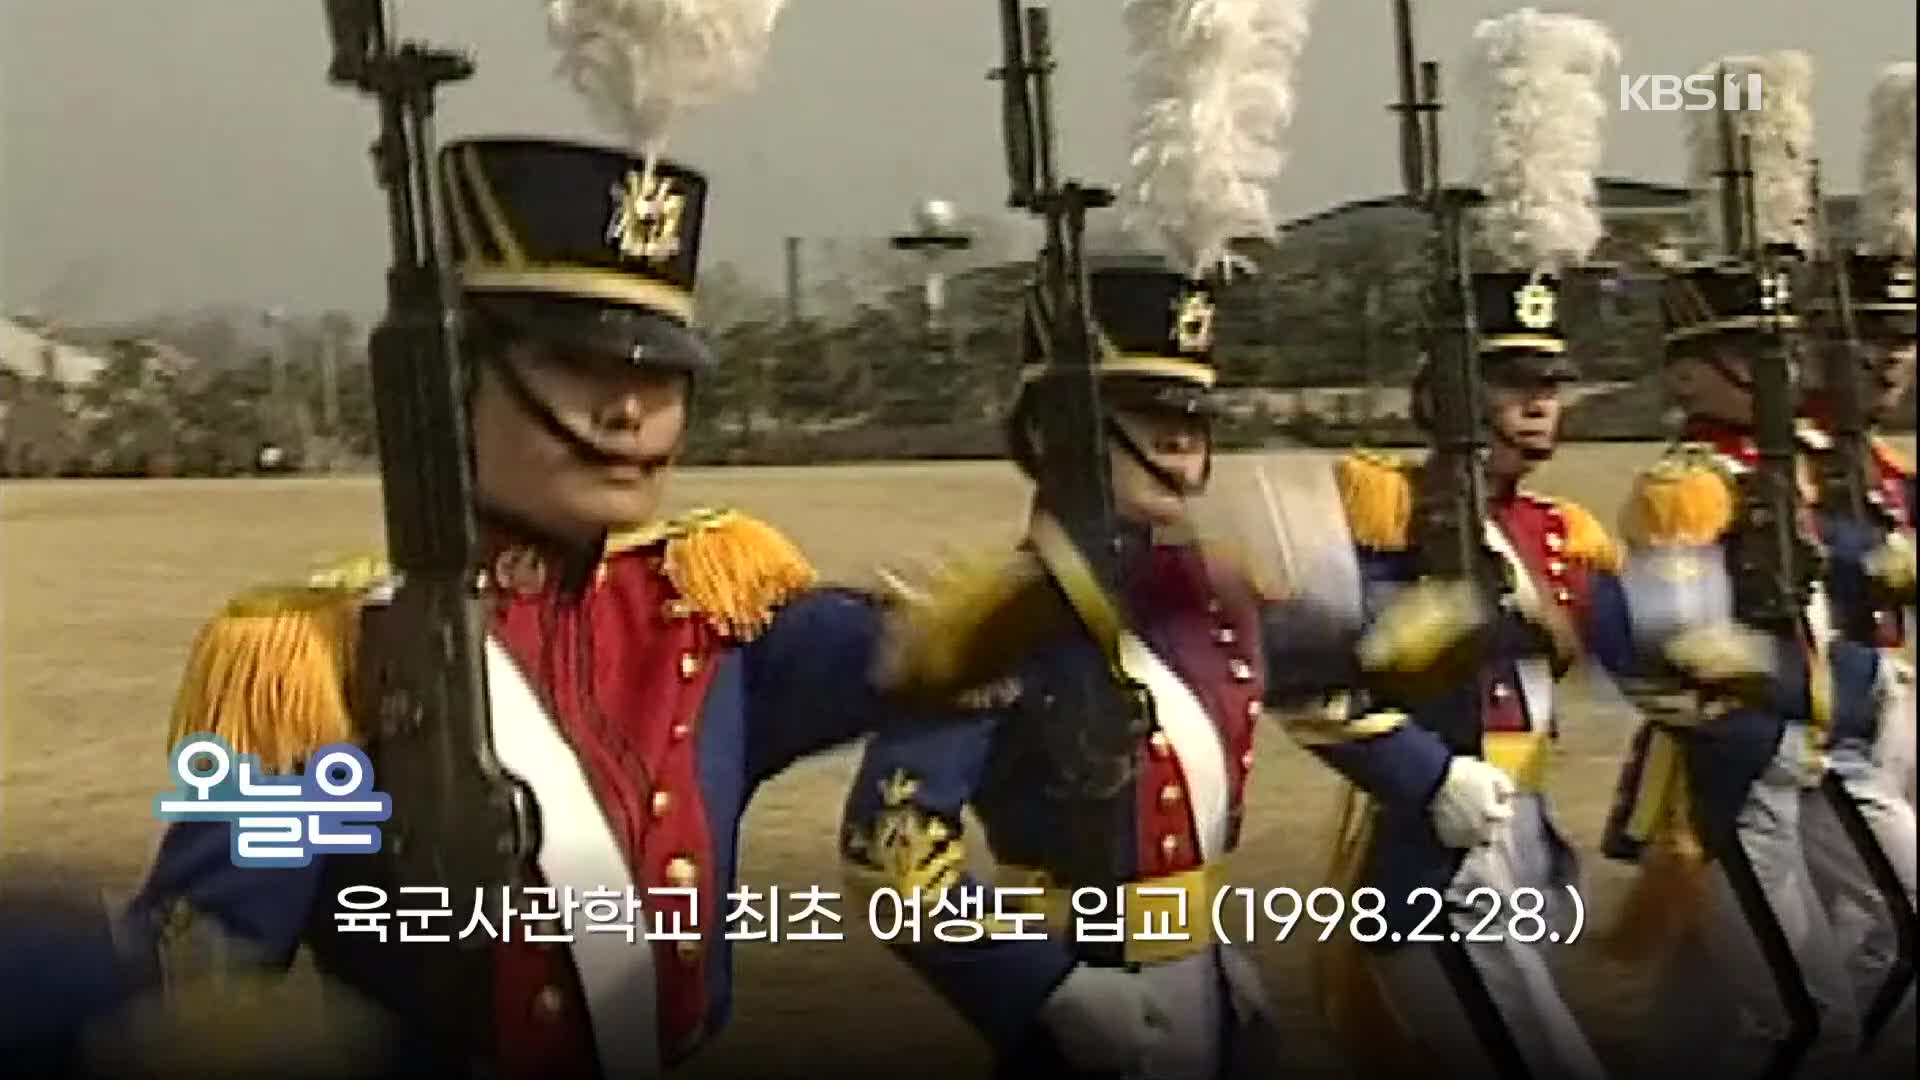 [오늘은] 육군사관학교 최초 여생도 입교 (1998.2.28.)